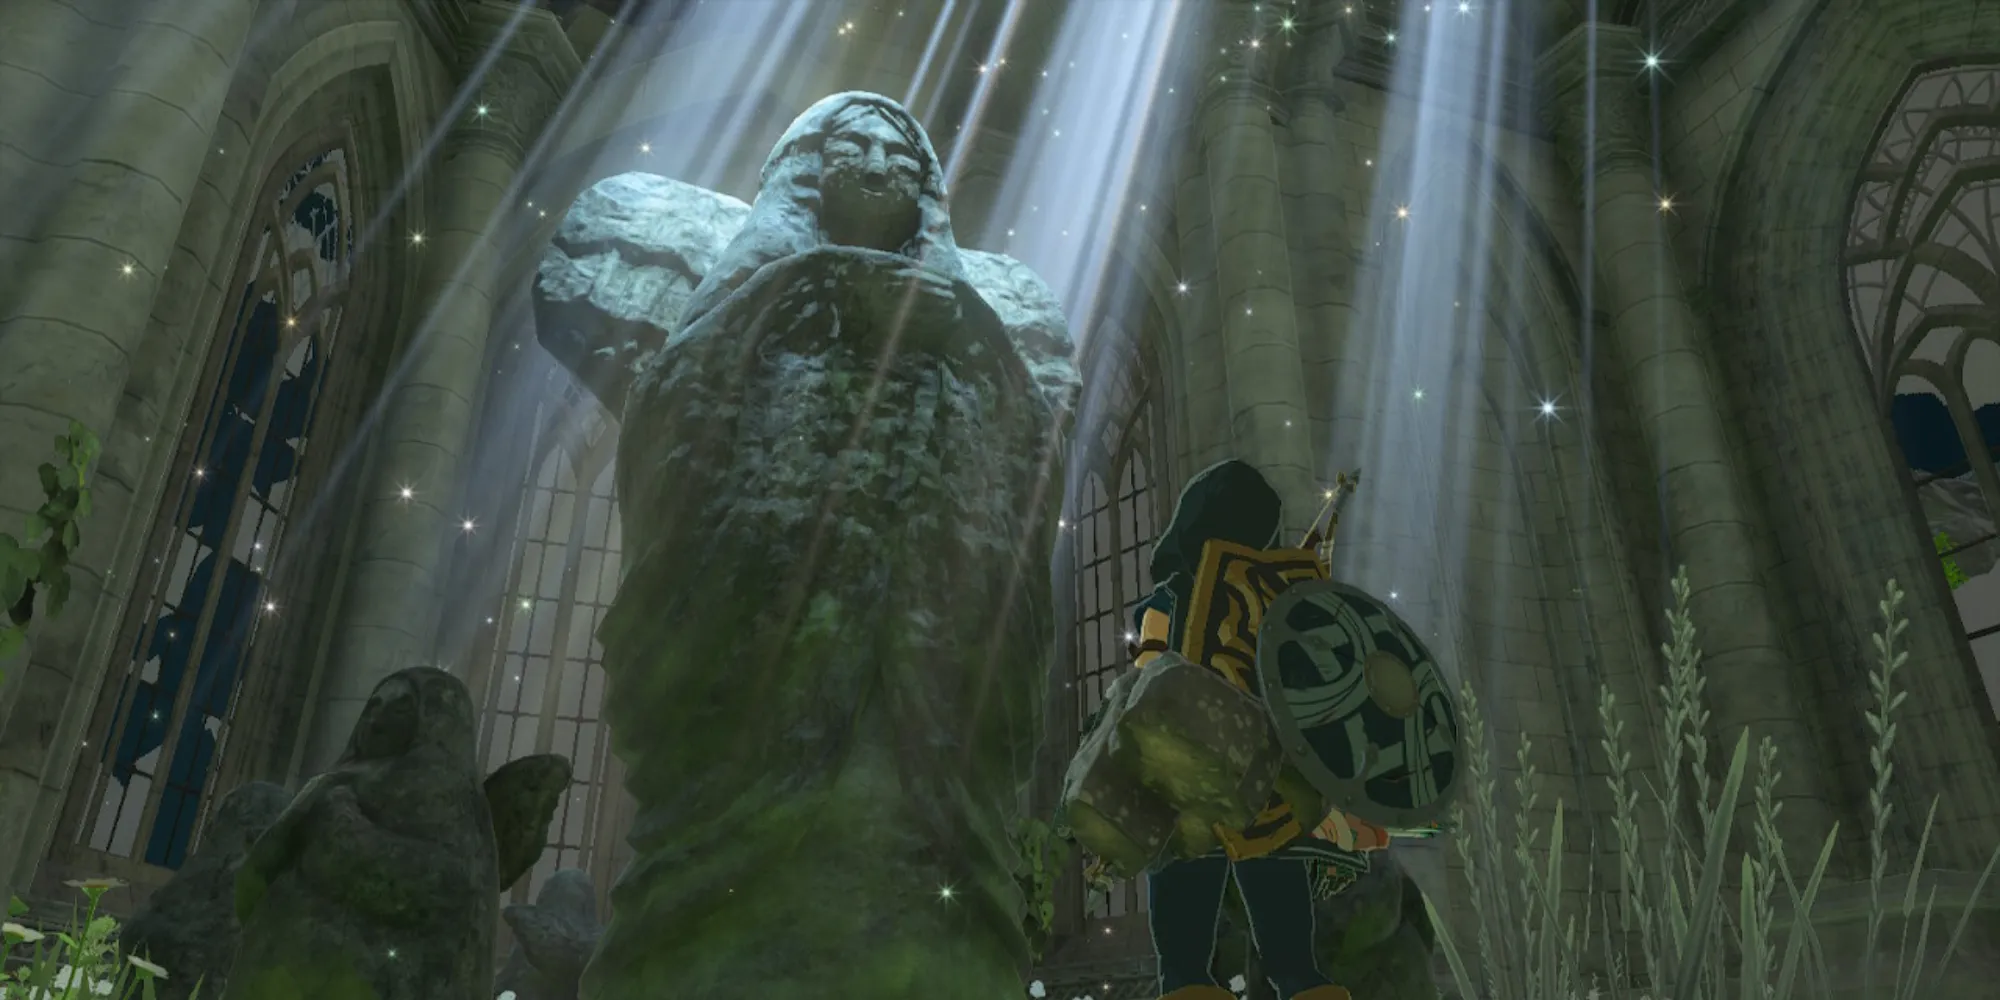 タイム神殿の女神像に近づくリンク